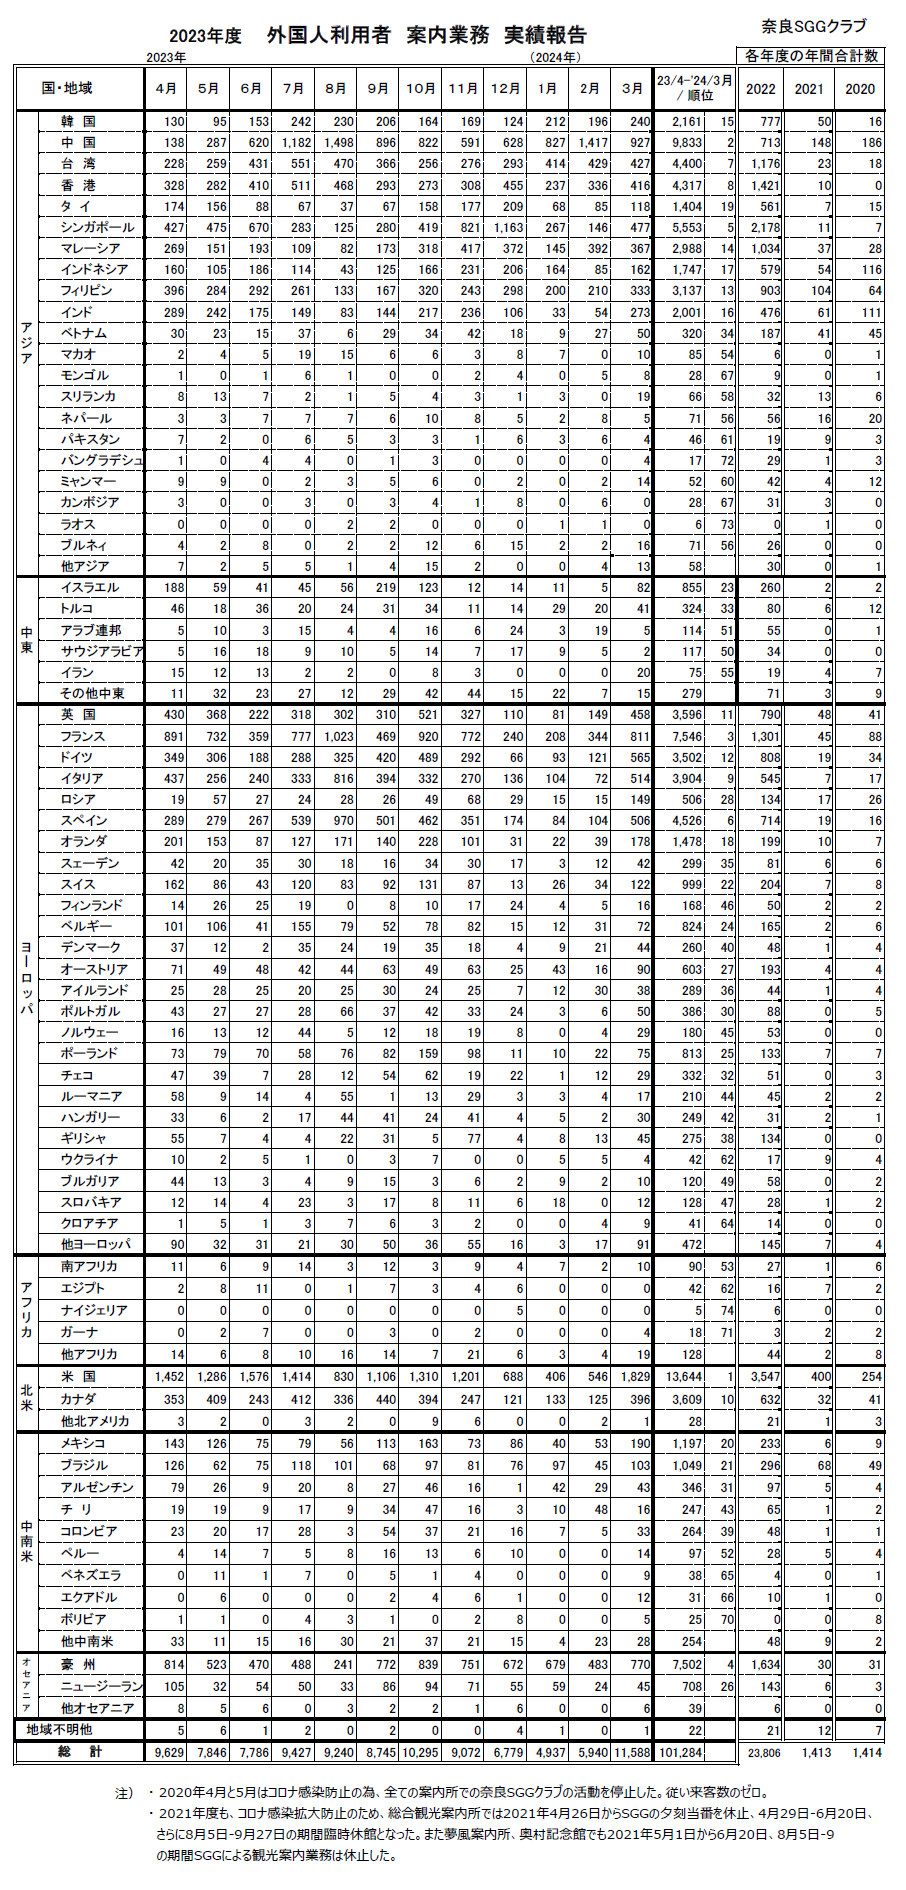 2023年度奈良ＳＧＧが案内所カウンターで対応した外国人観光客数